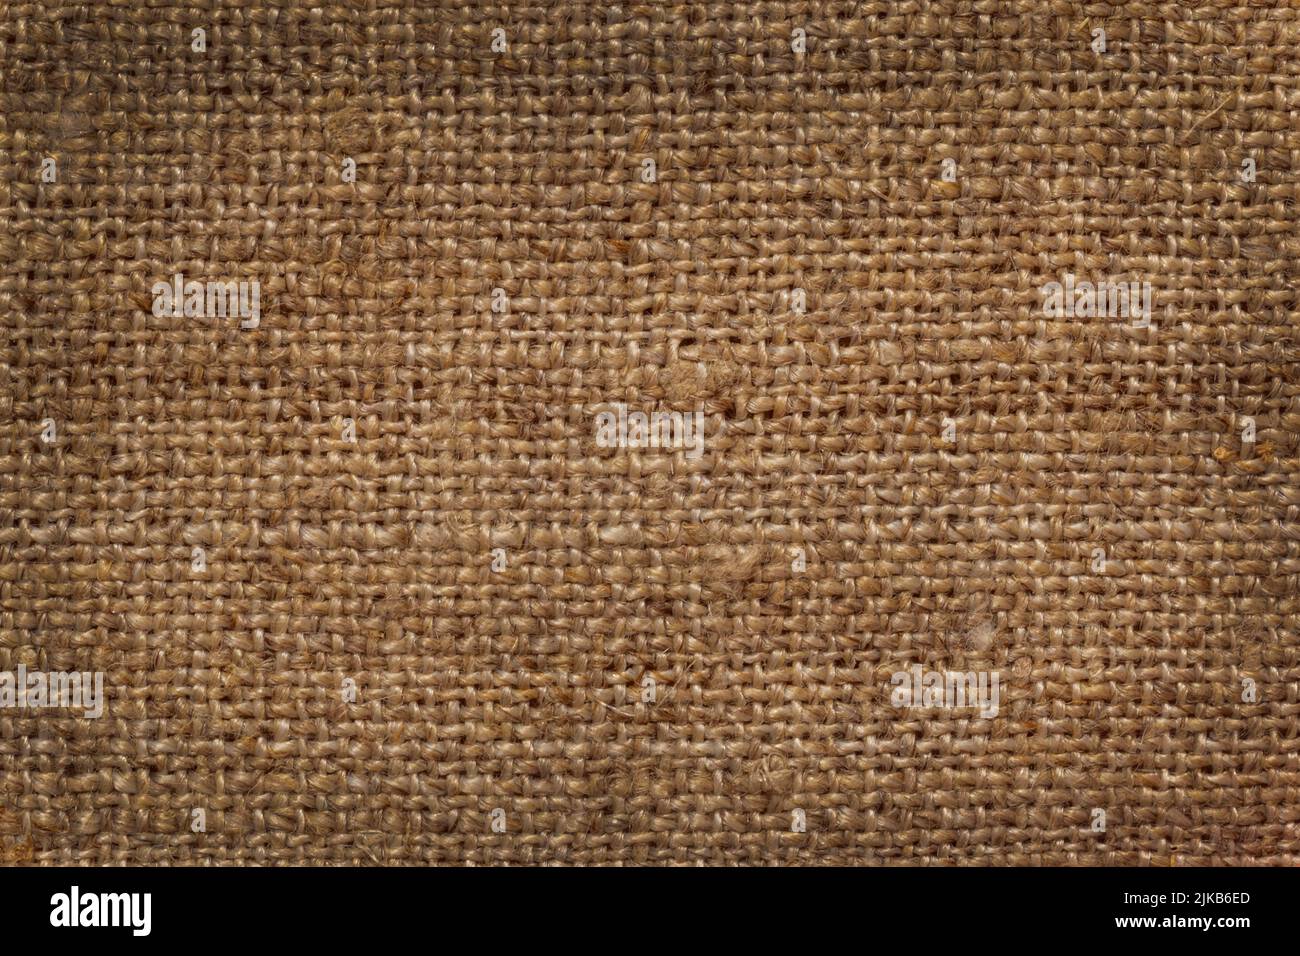 primer plano de textura de arpillera marrón oscuro Foto de stock